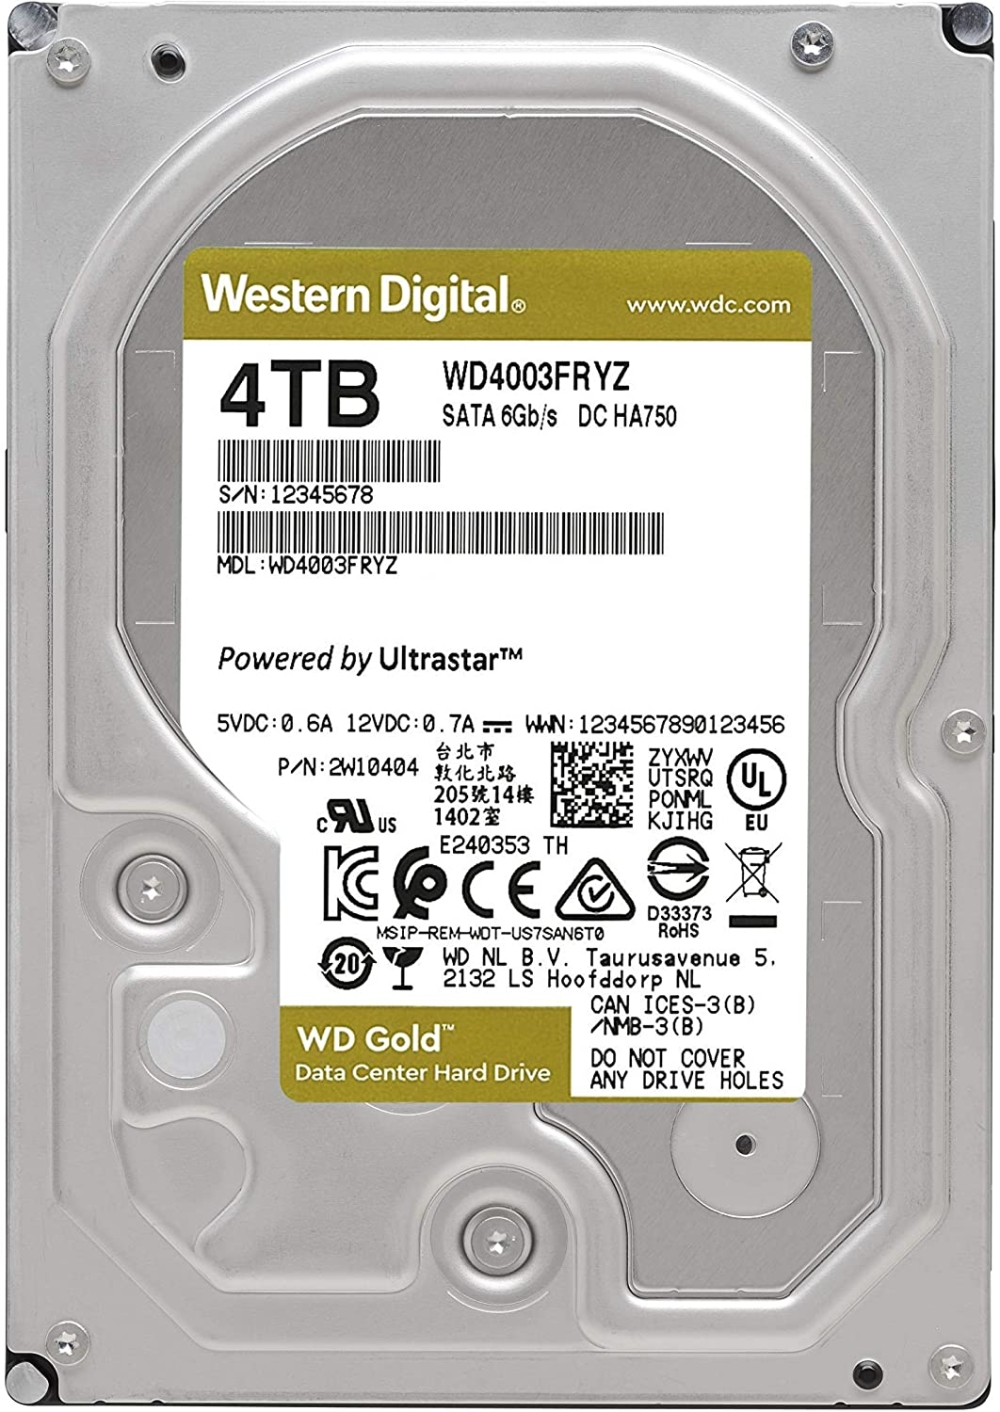 tvard-disk-western-digital-gold-datacenter-hdd-4-t-western-digital-wd4003fryz